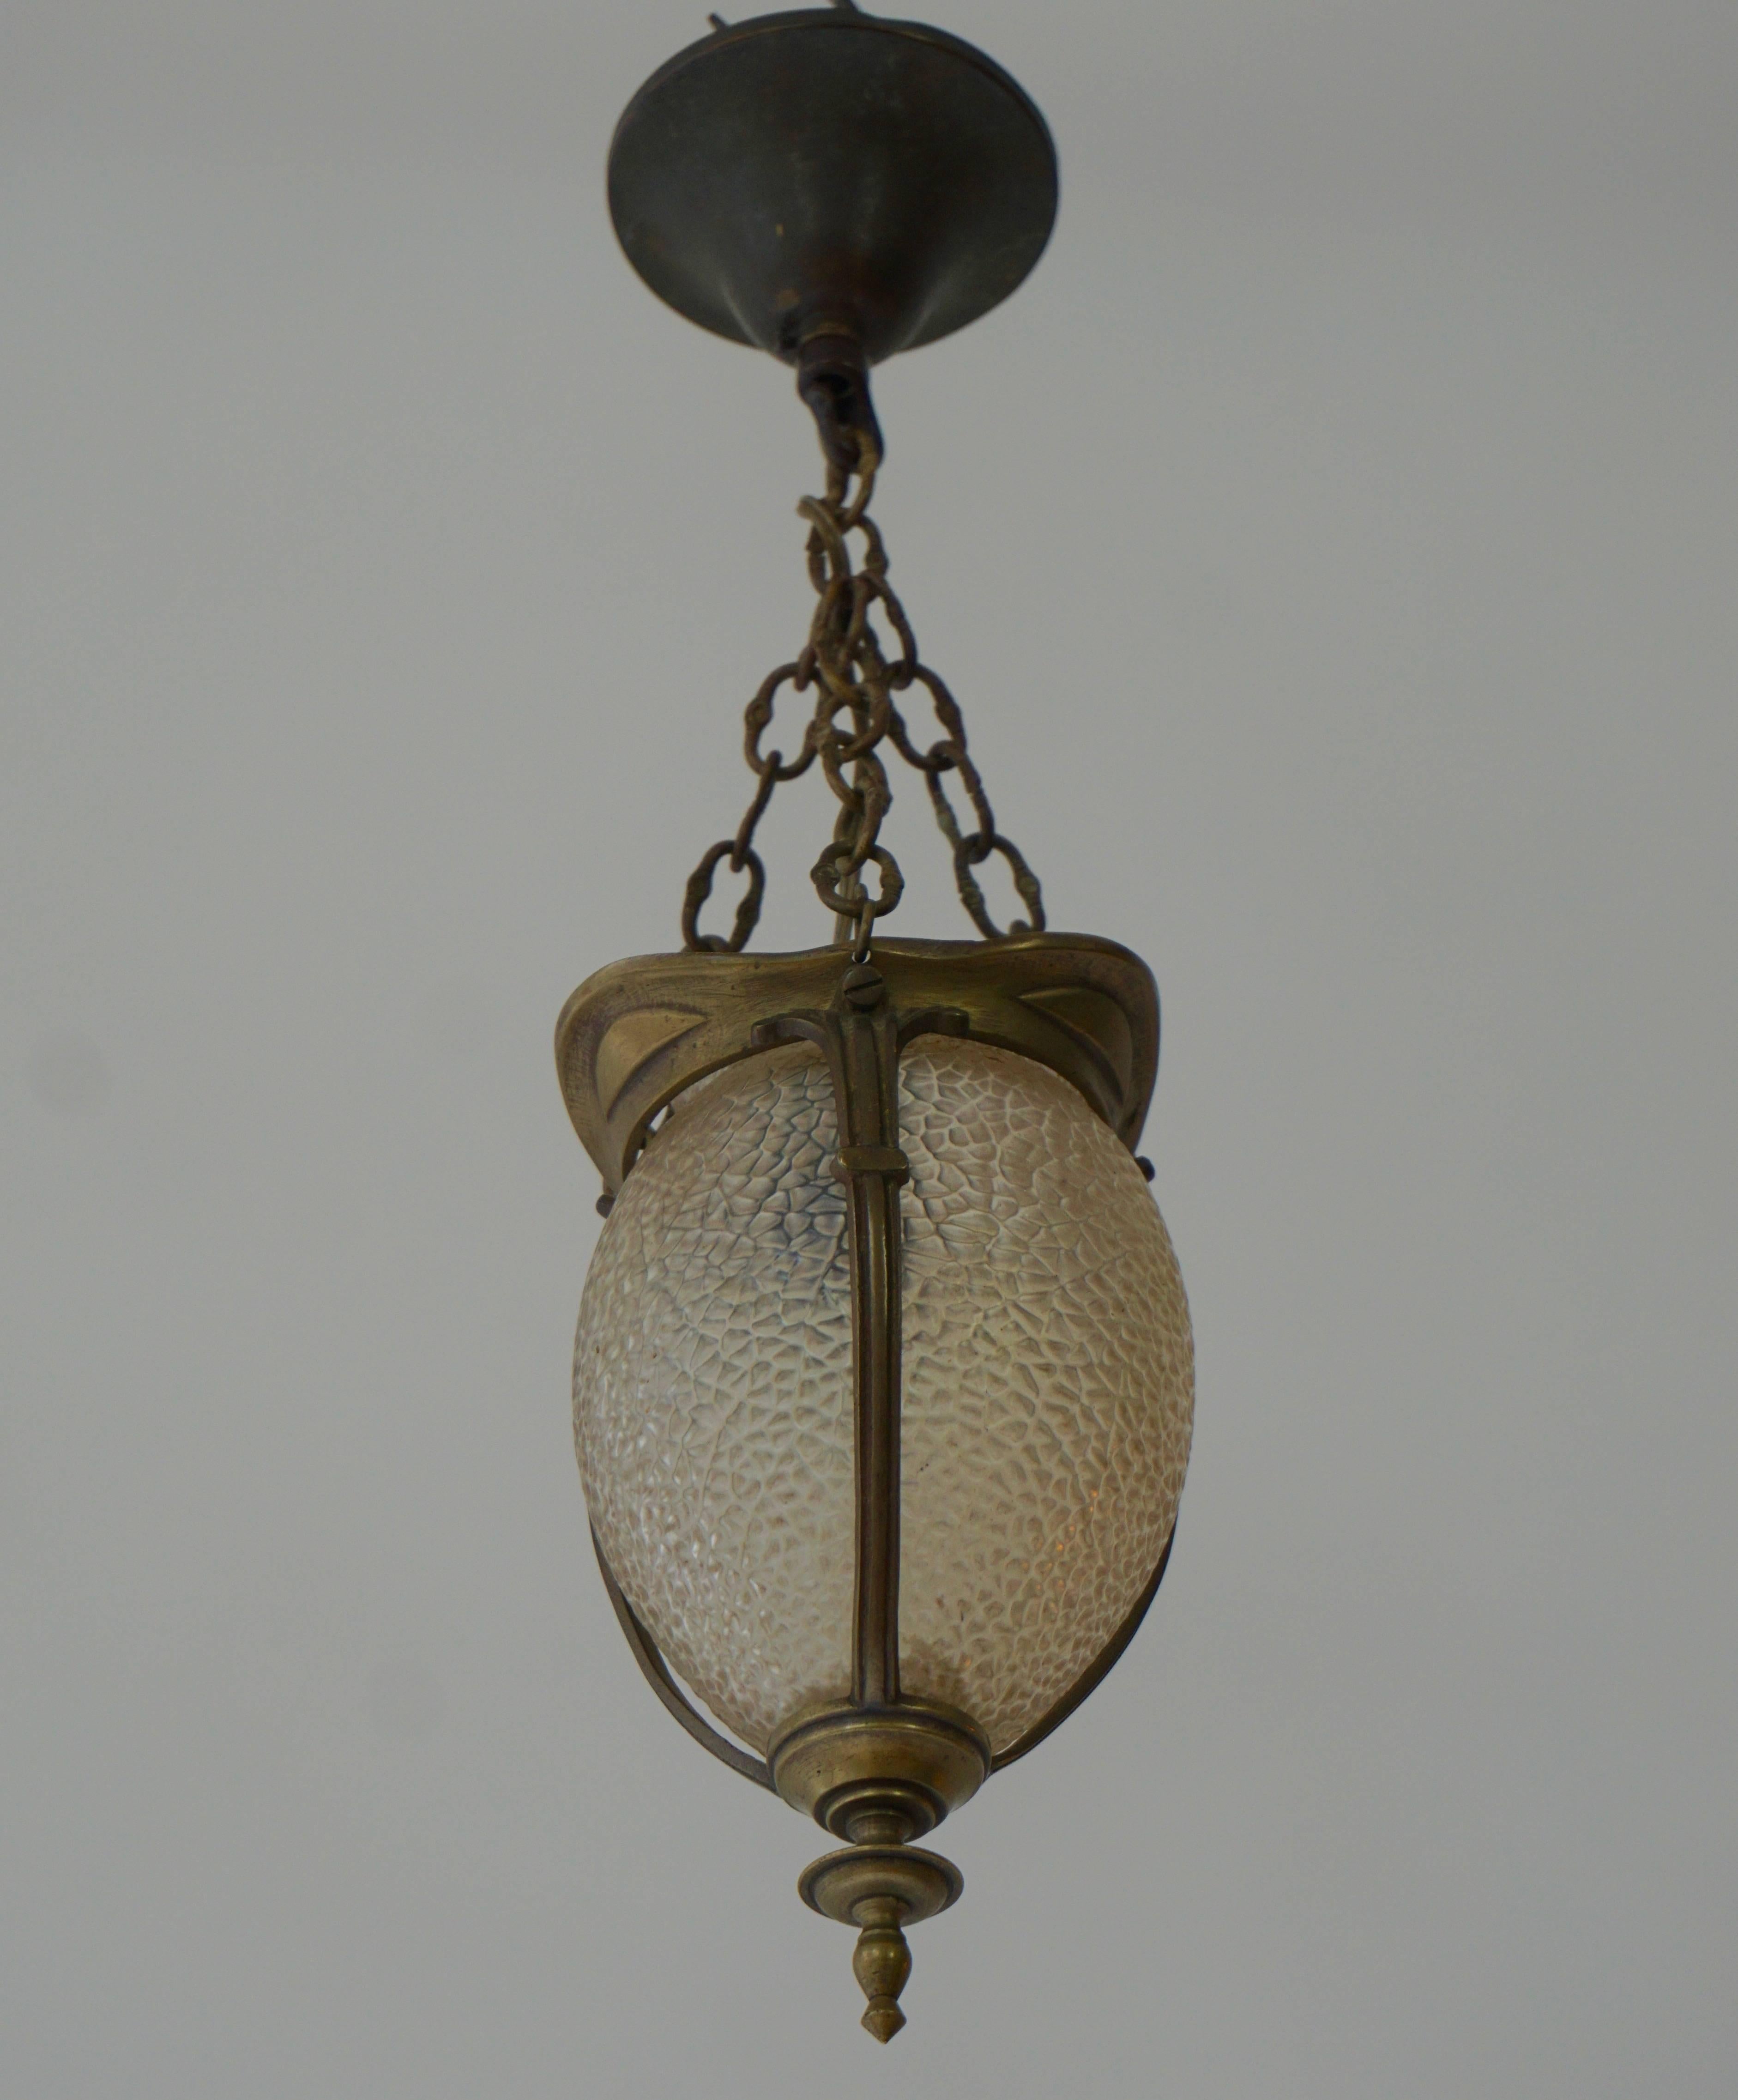 Two Jugendstil hall or pendant lights.
Size: 11 cm diameter.

